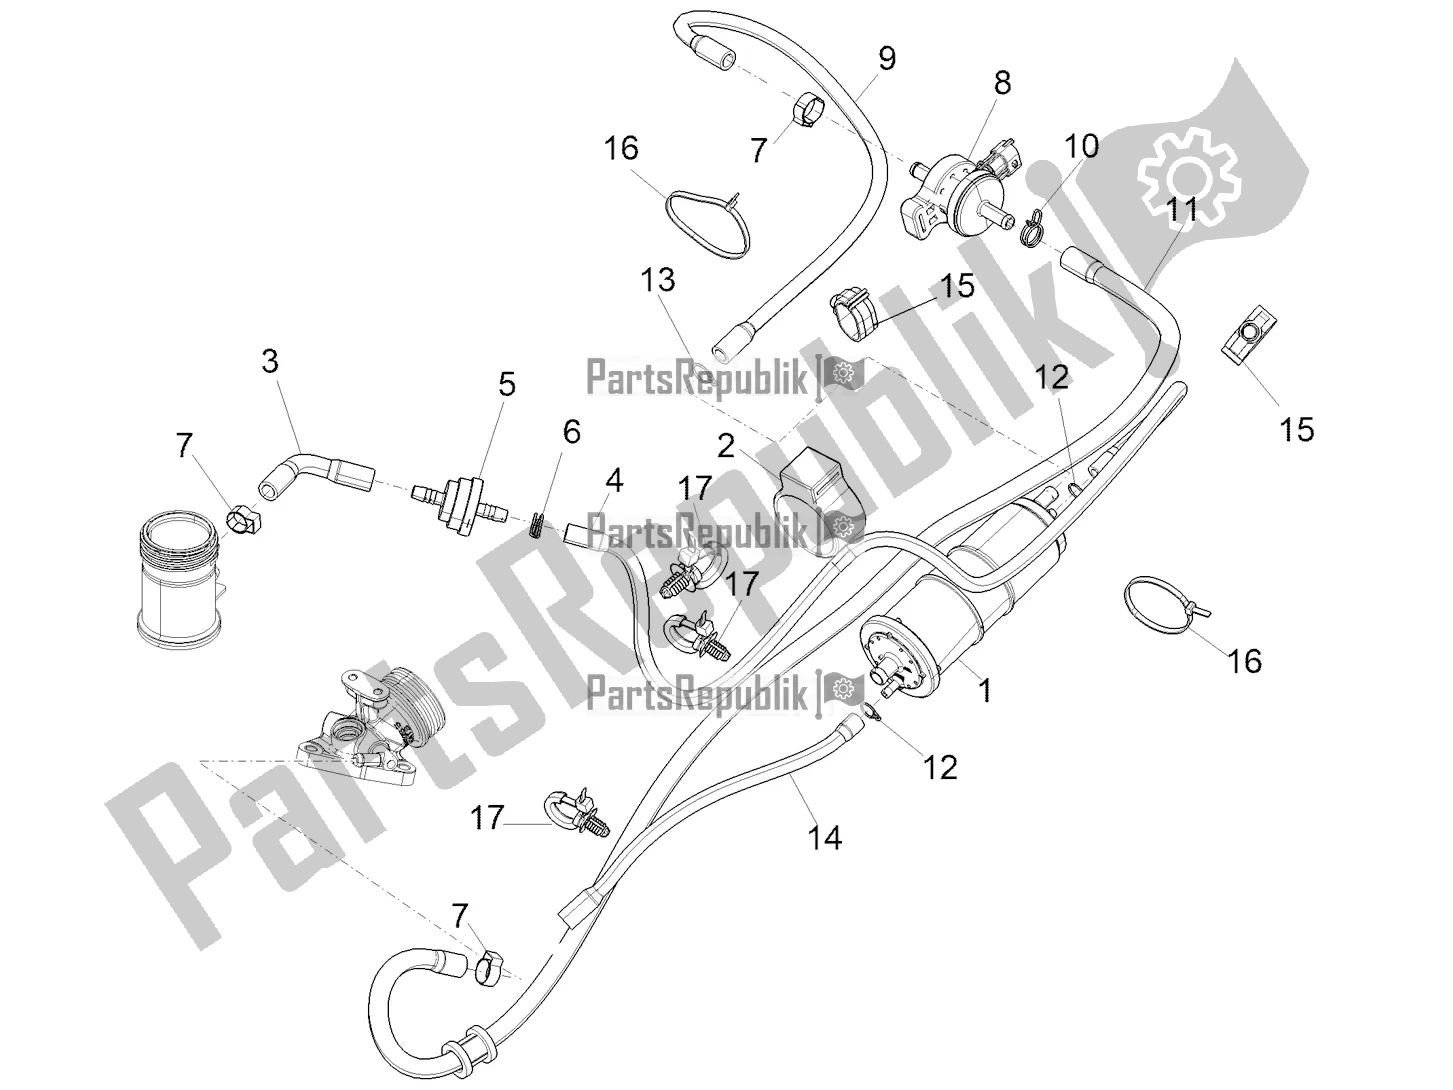 Toutes les pièces pour le Système Anti-percolation du Piaggio Medley 125 ABS 2022